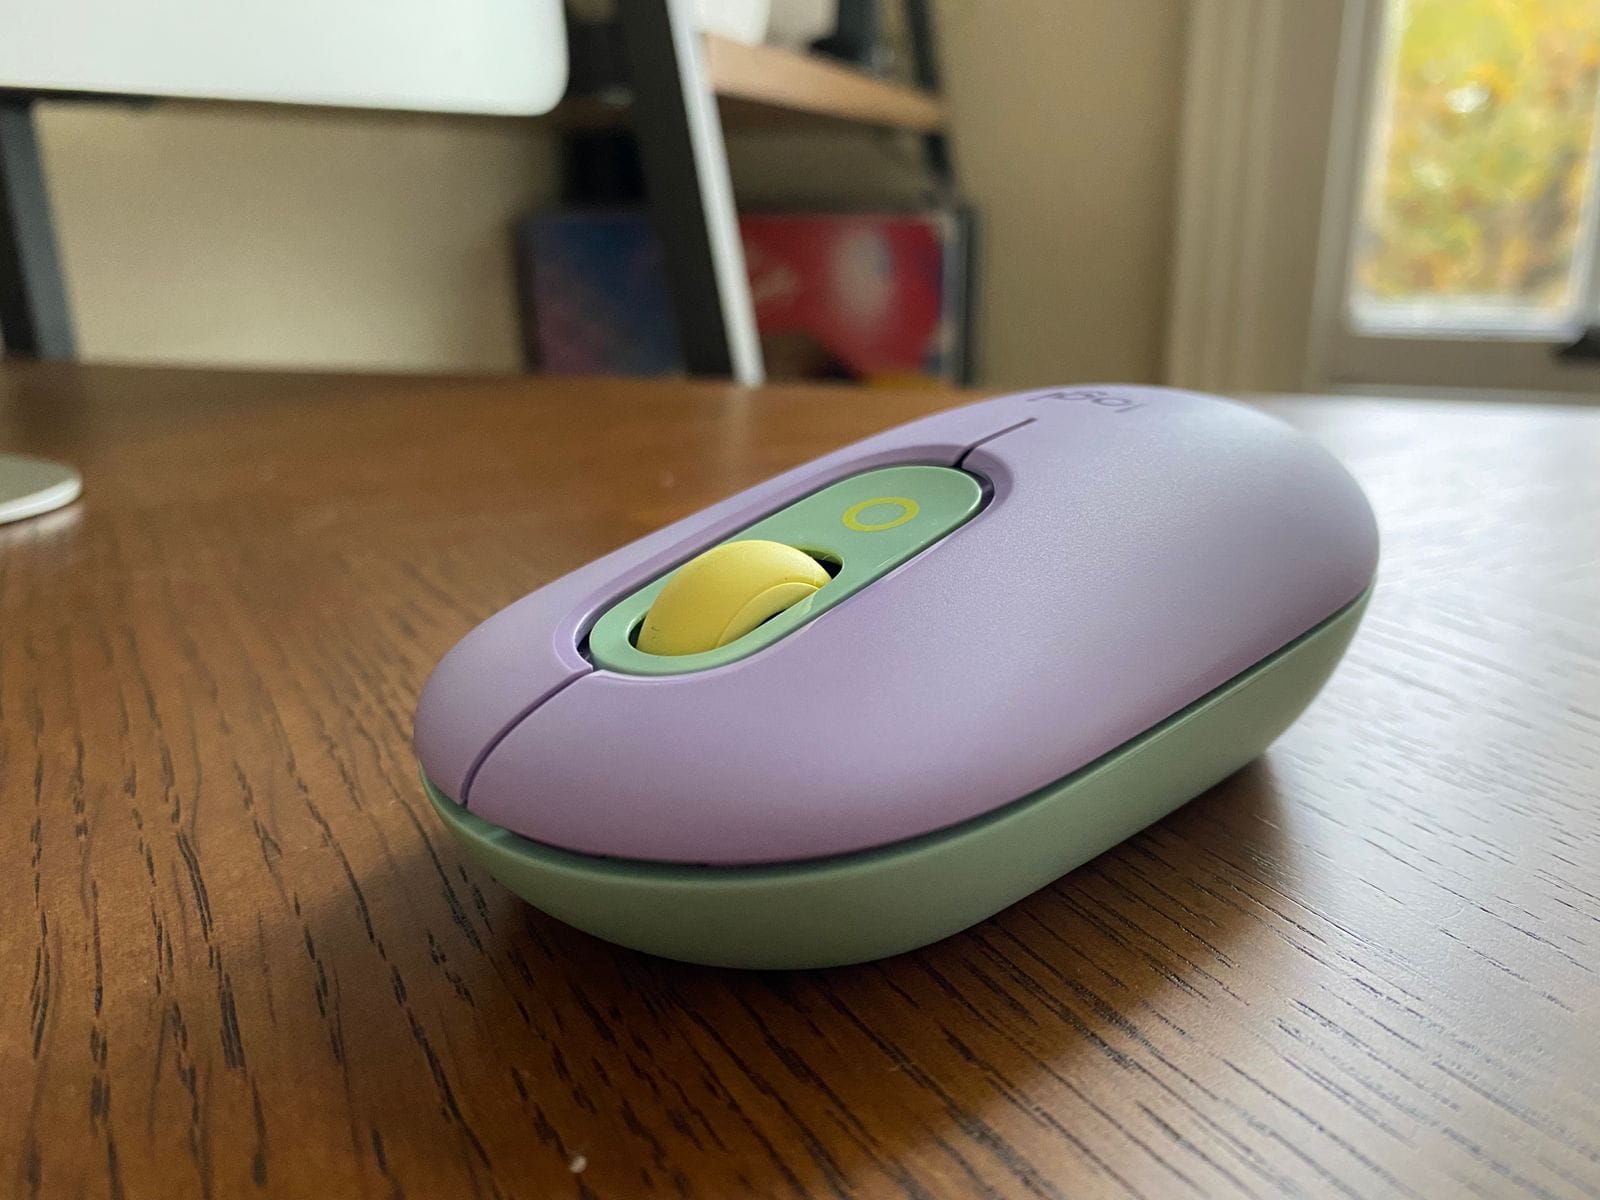 Logitech POP Mouse wireless mouse on a desk